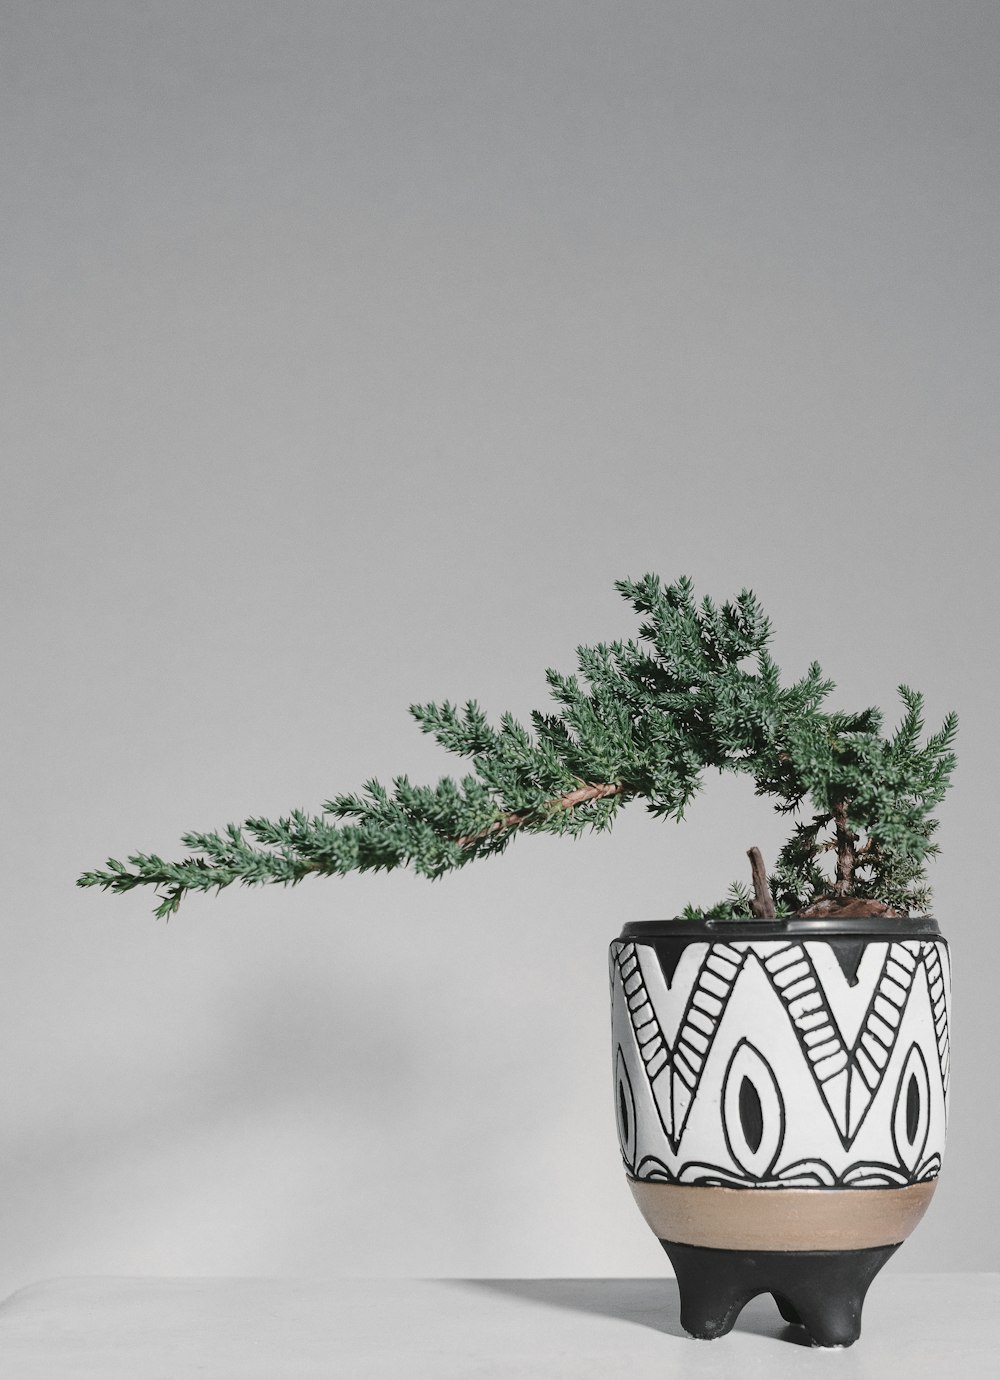 grüne Pflanze auf schwarz-weißem Keramiktopf